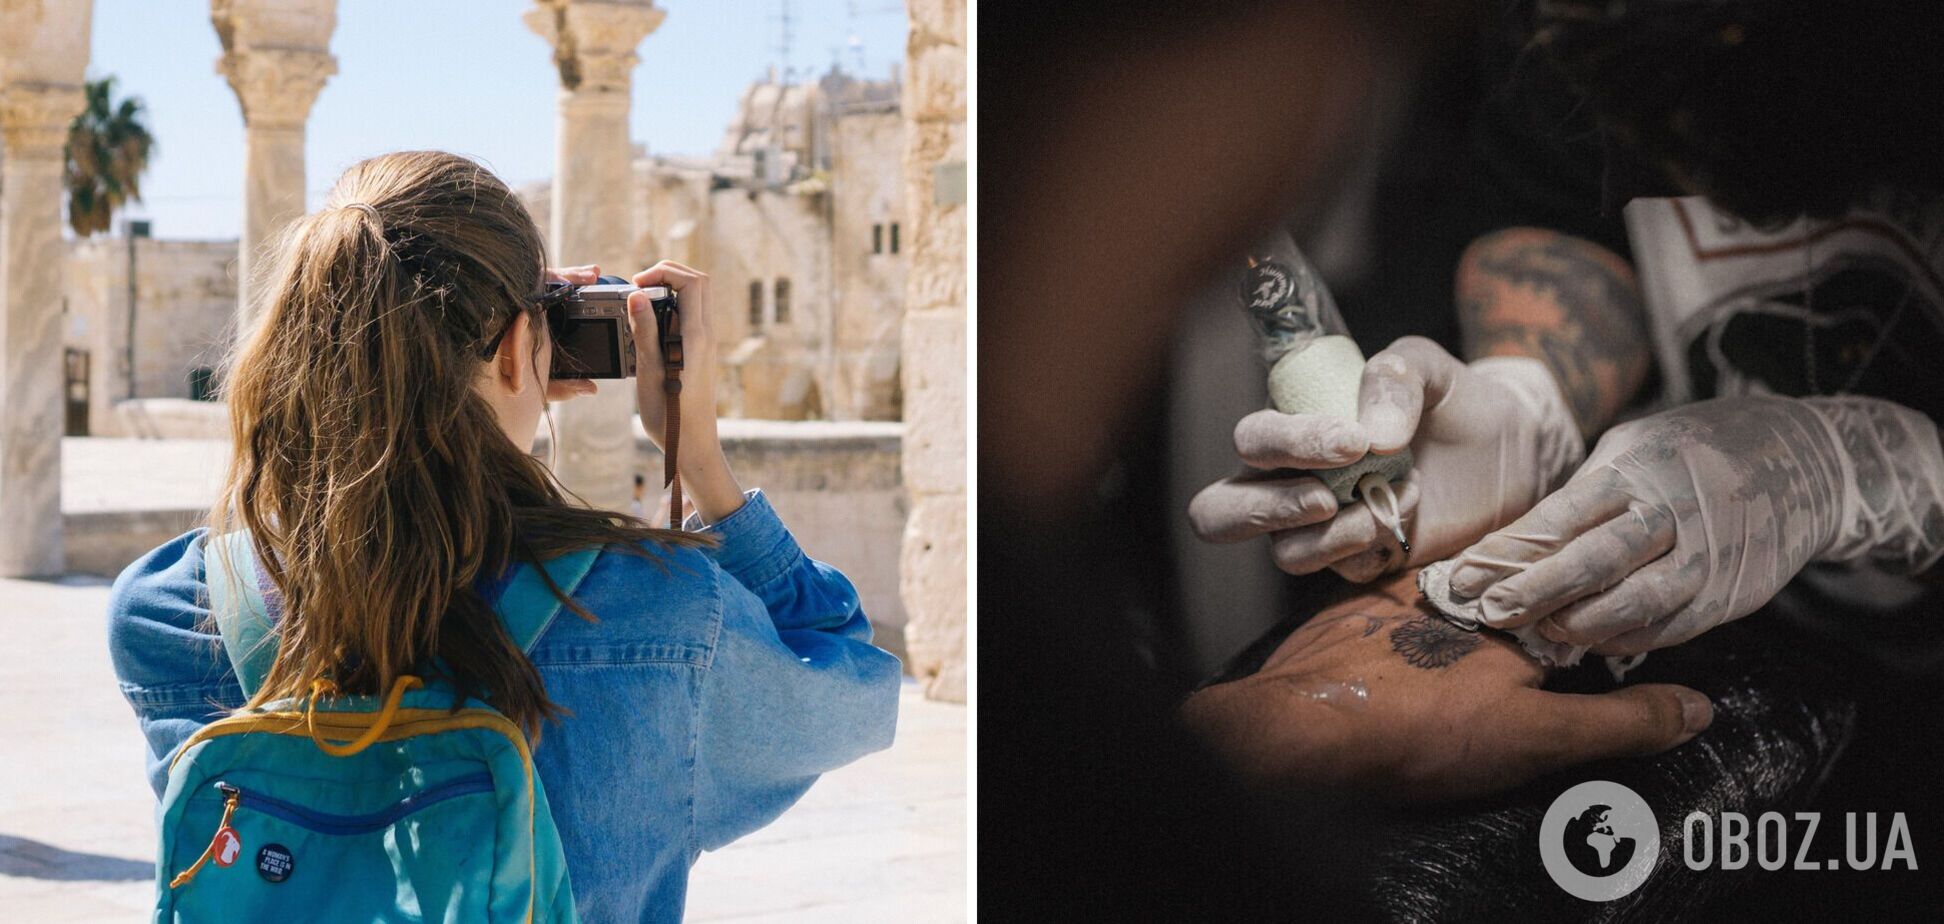 Туристка из Швеции сделала себе тату в Марокко, но была в шоке, узнав его значение